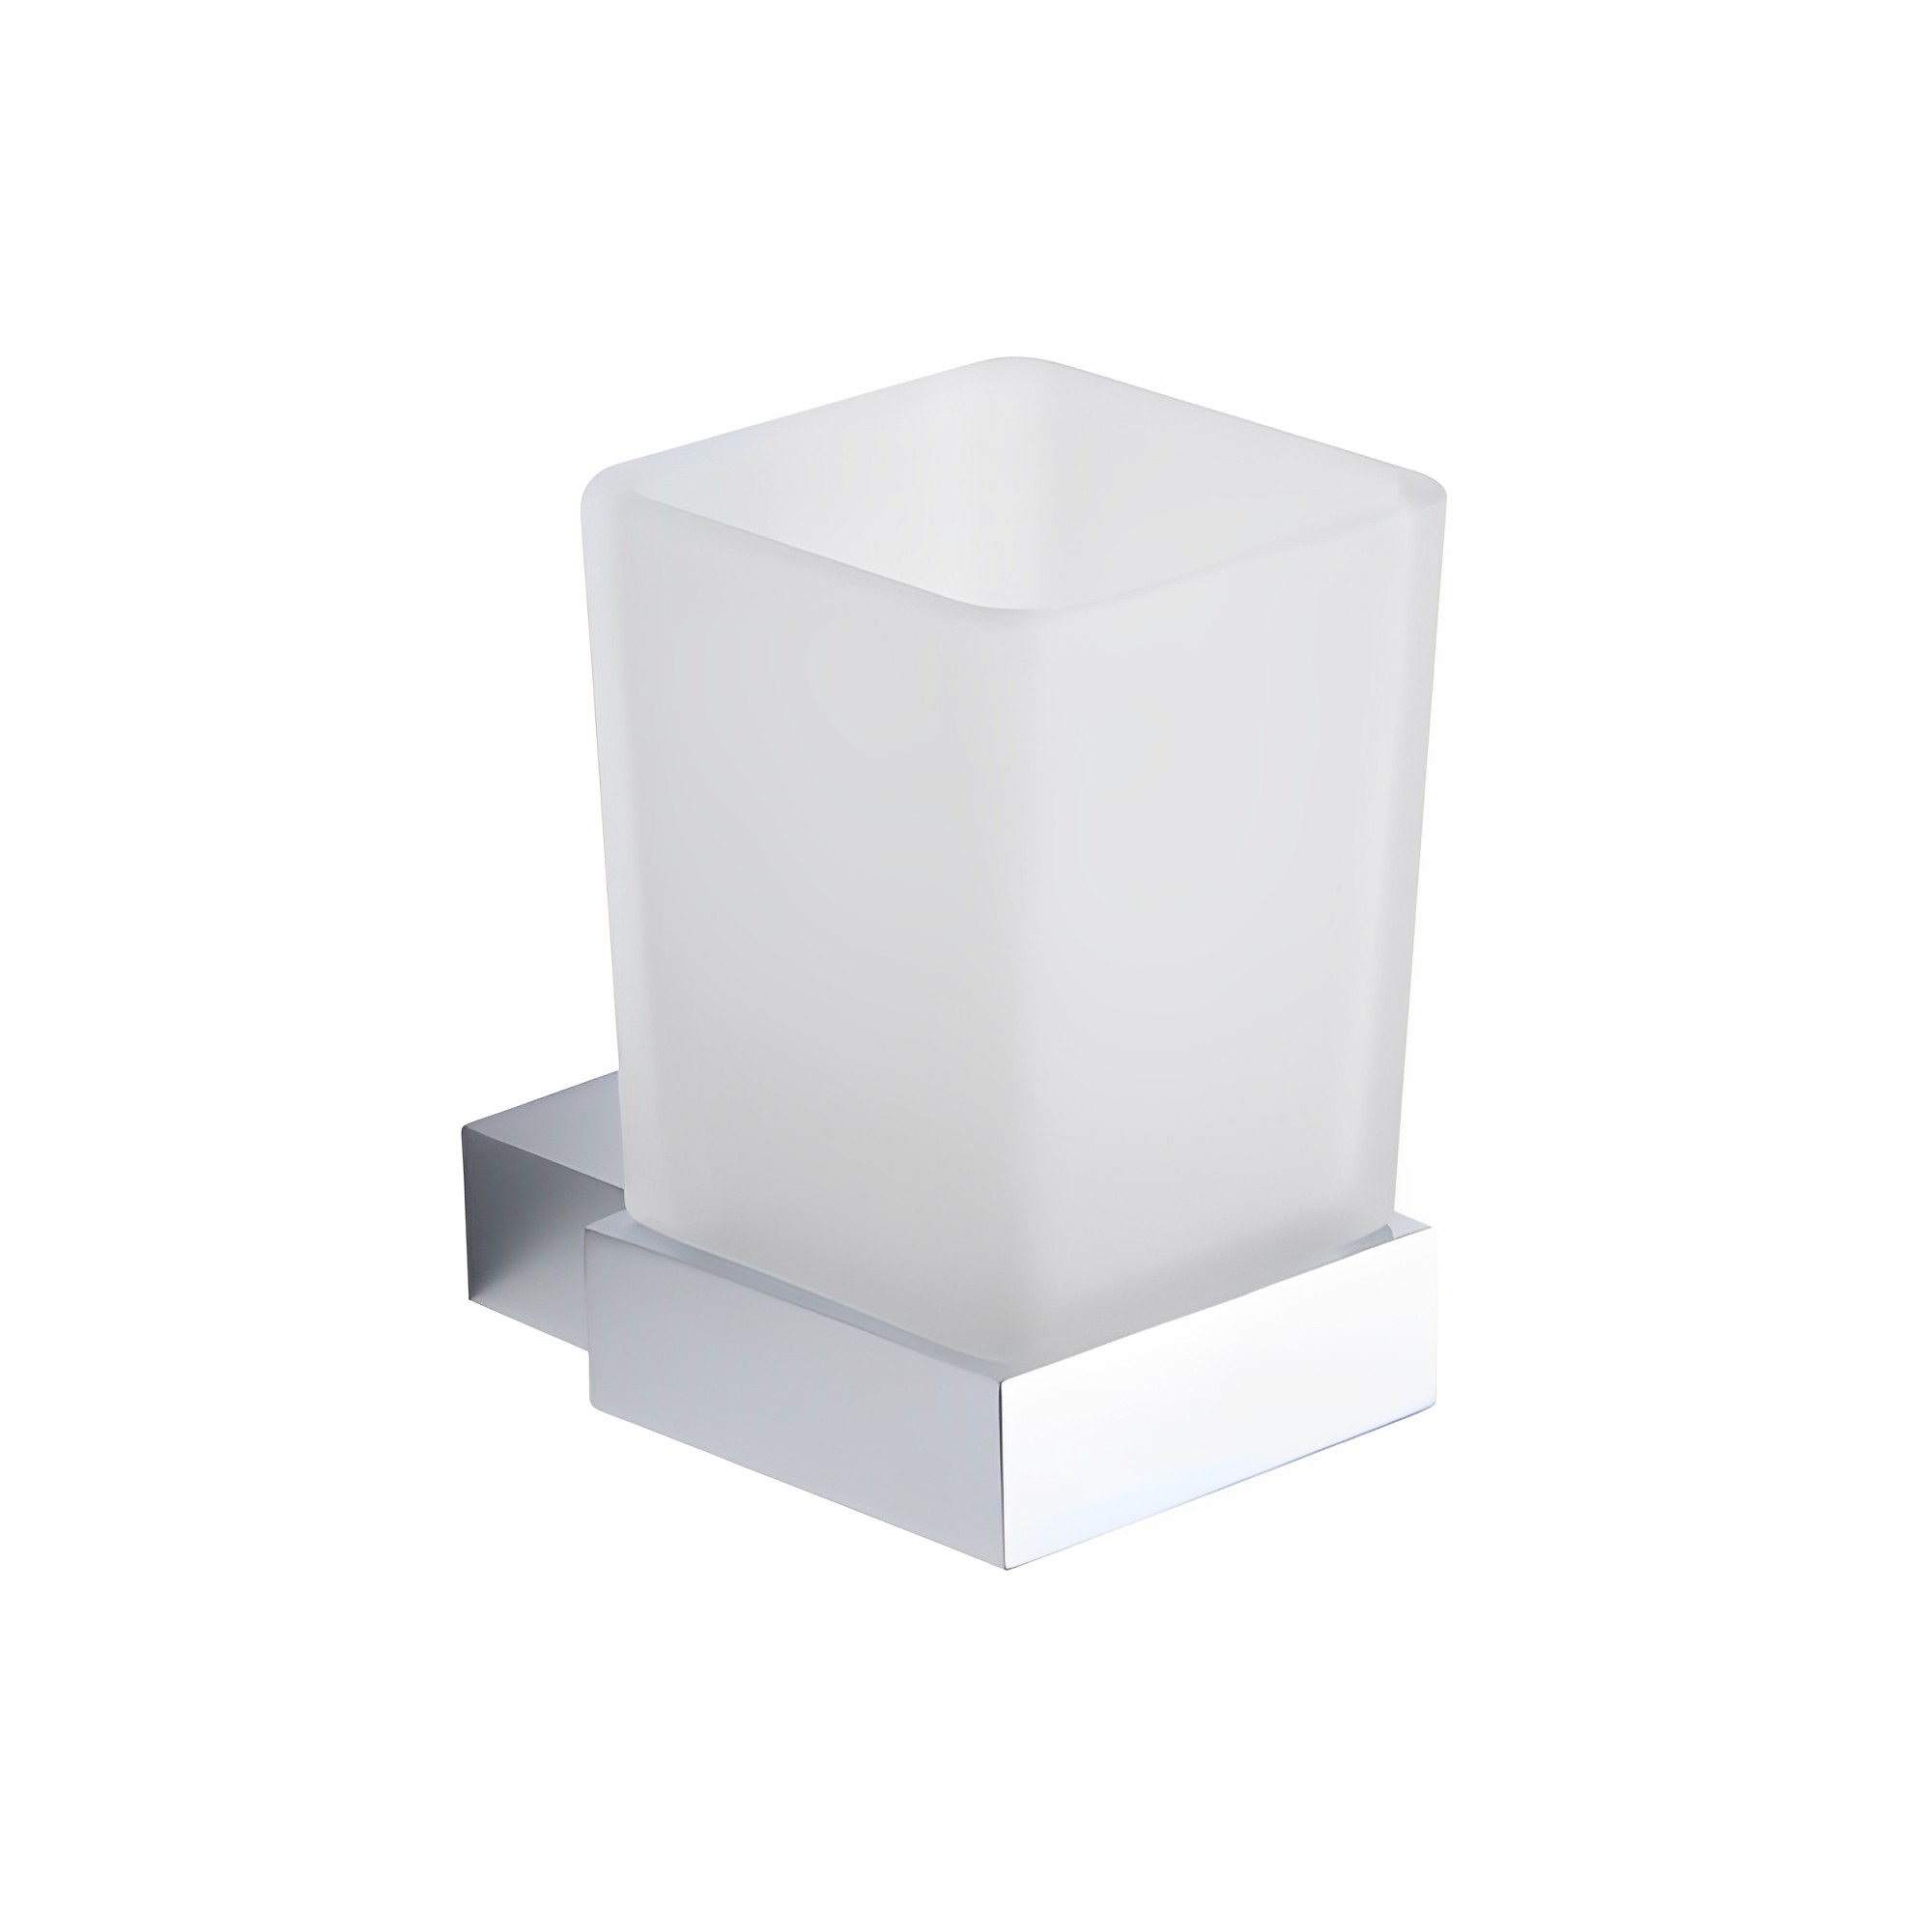 OJ-G1412L suporte de copo quadrado montado na parede com conjunto de copo de vidro fosco para acessórios de banheiro de latão